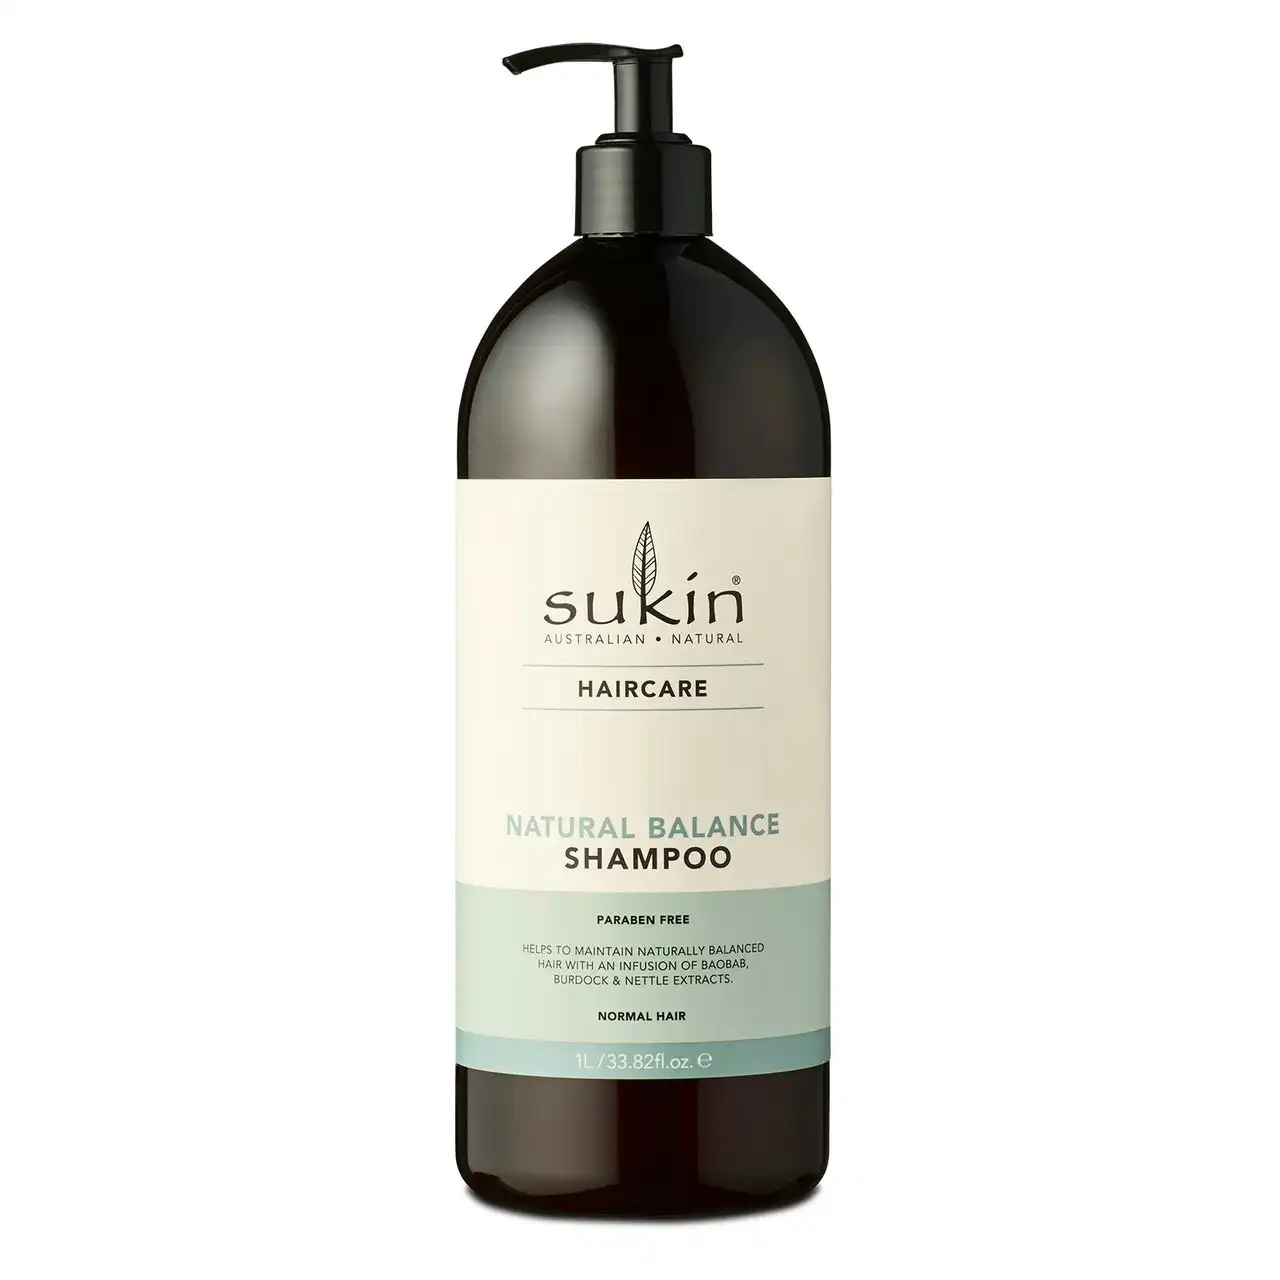 Sukin Haircare Natural Balance Shampoo 1 Litre